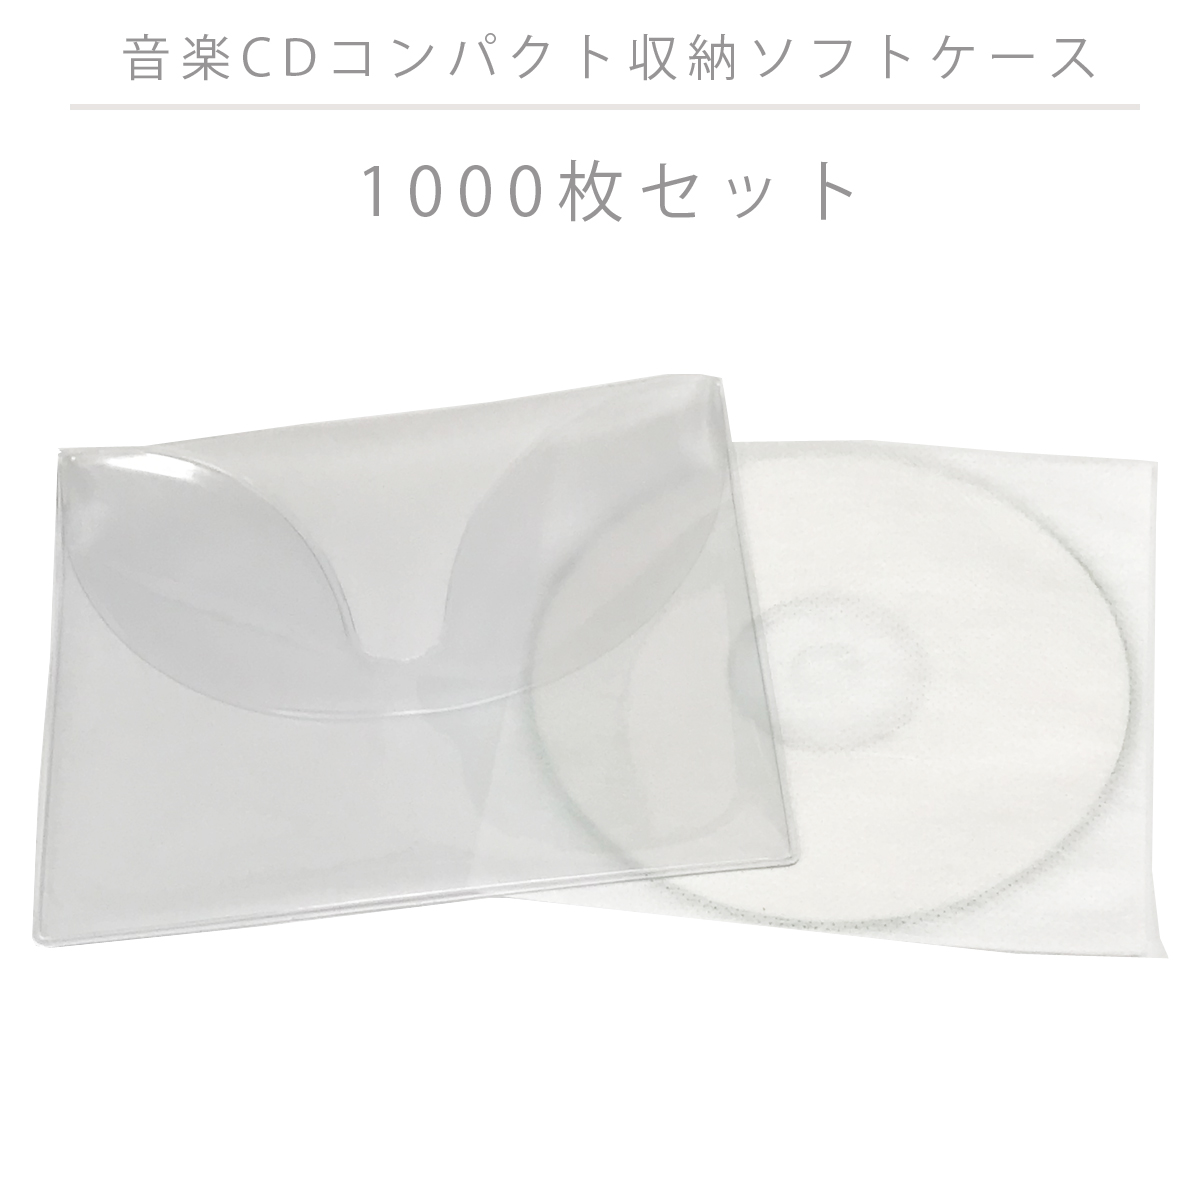 1枚あたり44円 CD DVD Blu-rayをコンパクトに収納 毎日激安特売で 営業中です モデル着用＆注目アイテム 1000枚セット 音楽CDコンパクト収納ソフトケース 送料無料 不織布袋付き